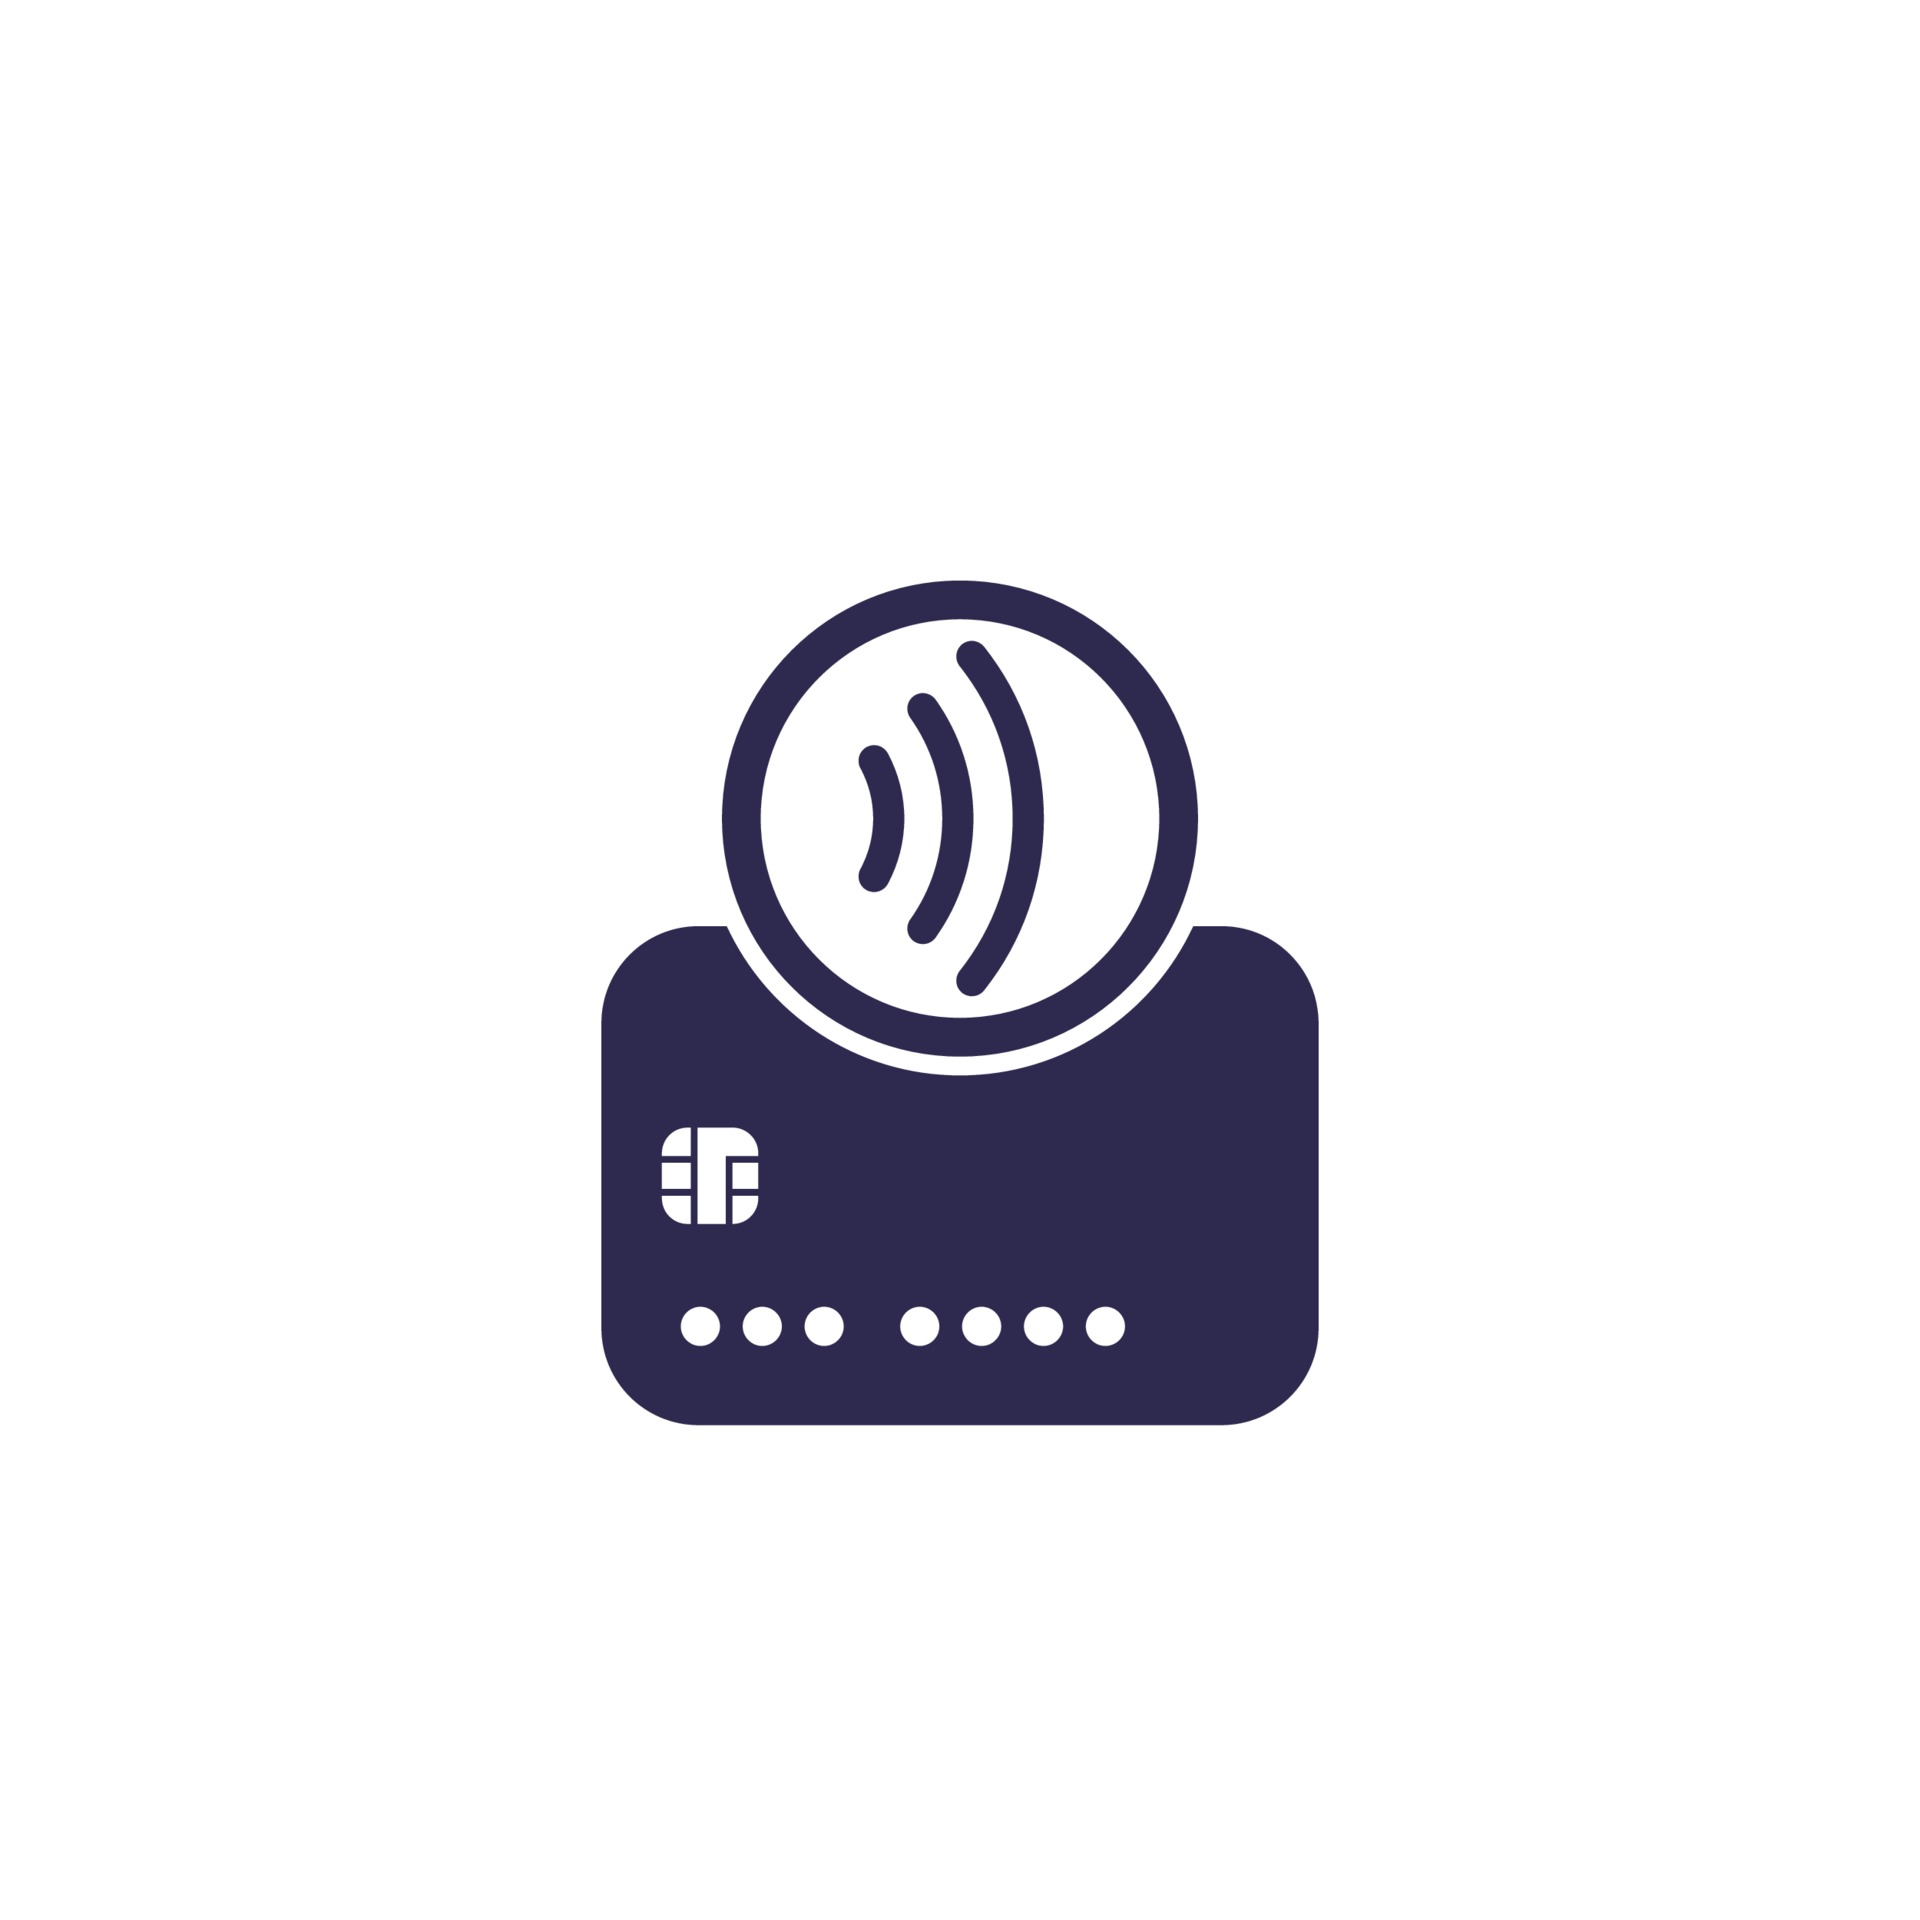 kontaktlösa betalningar med kort, tryck för att betala-ikonen 